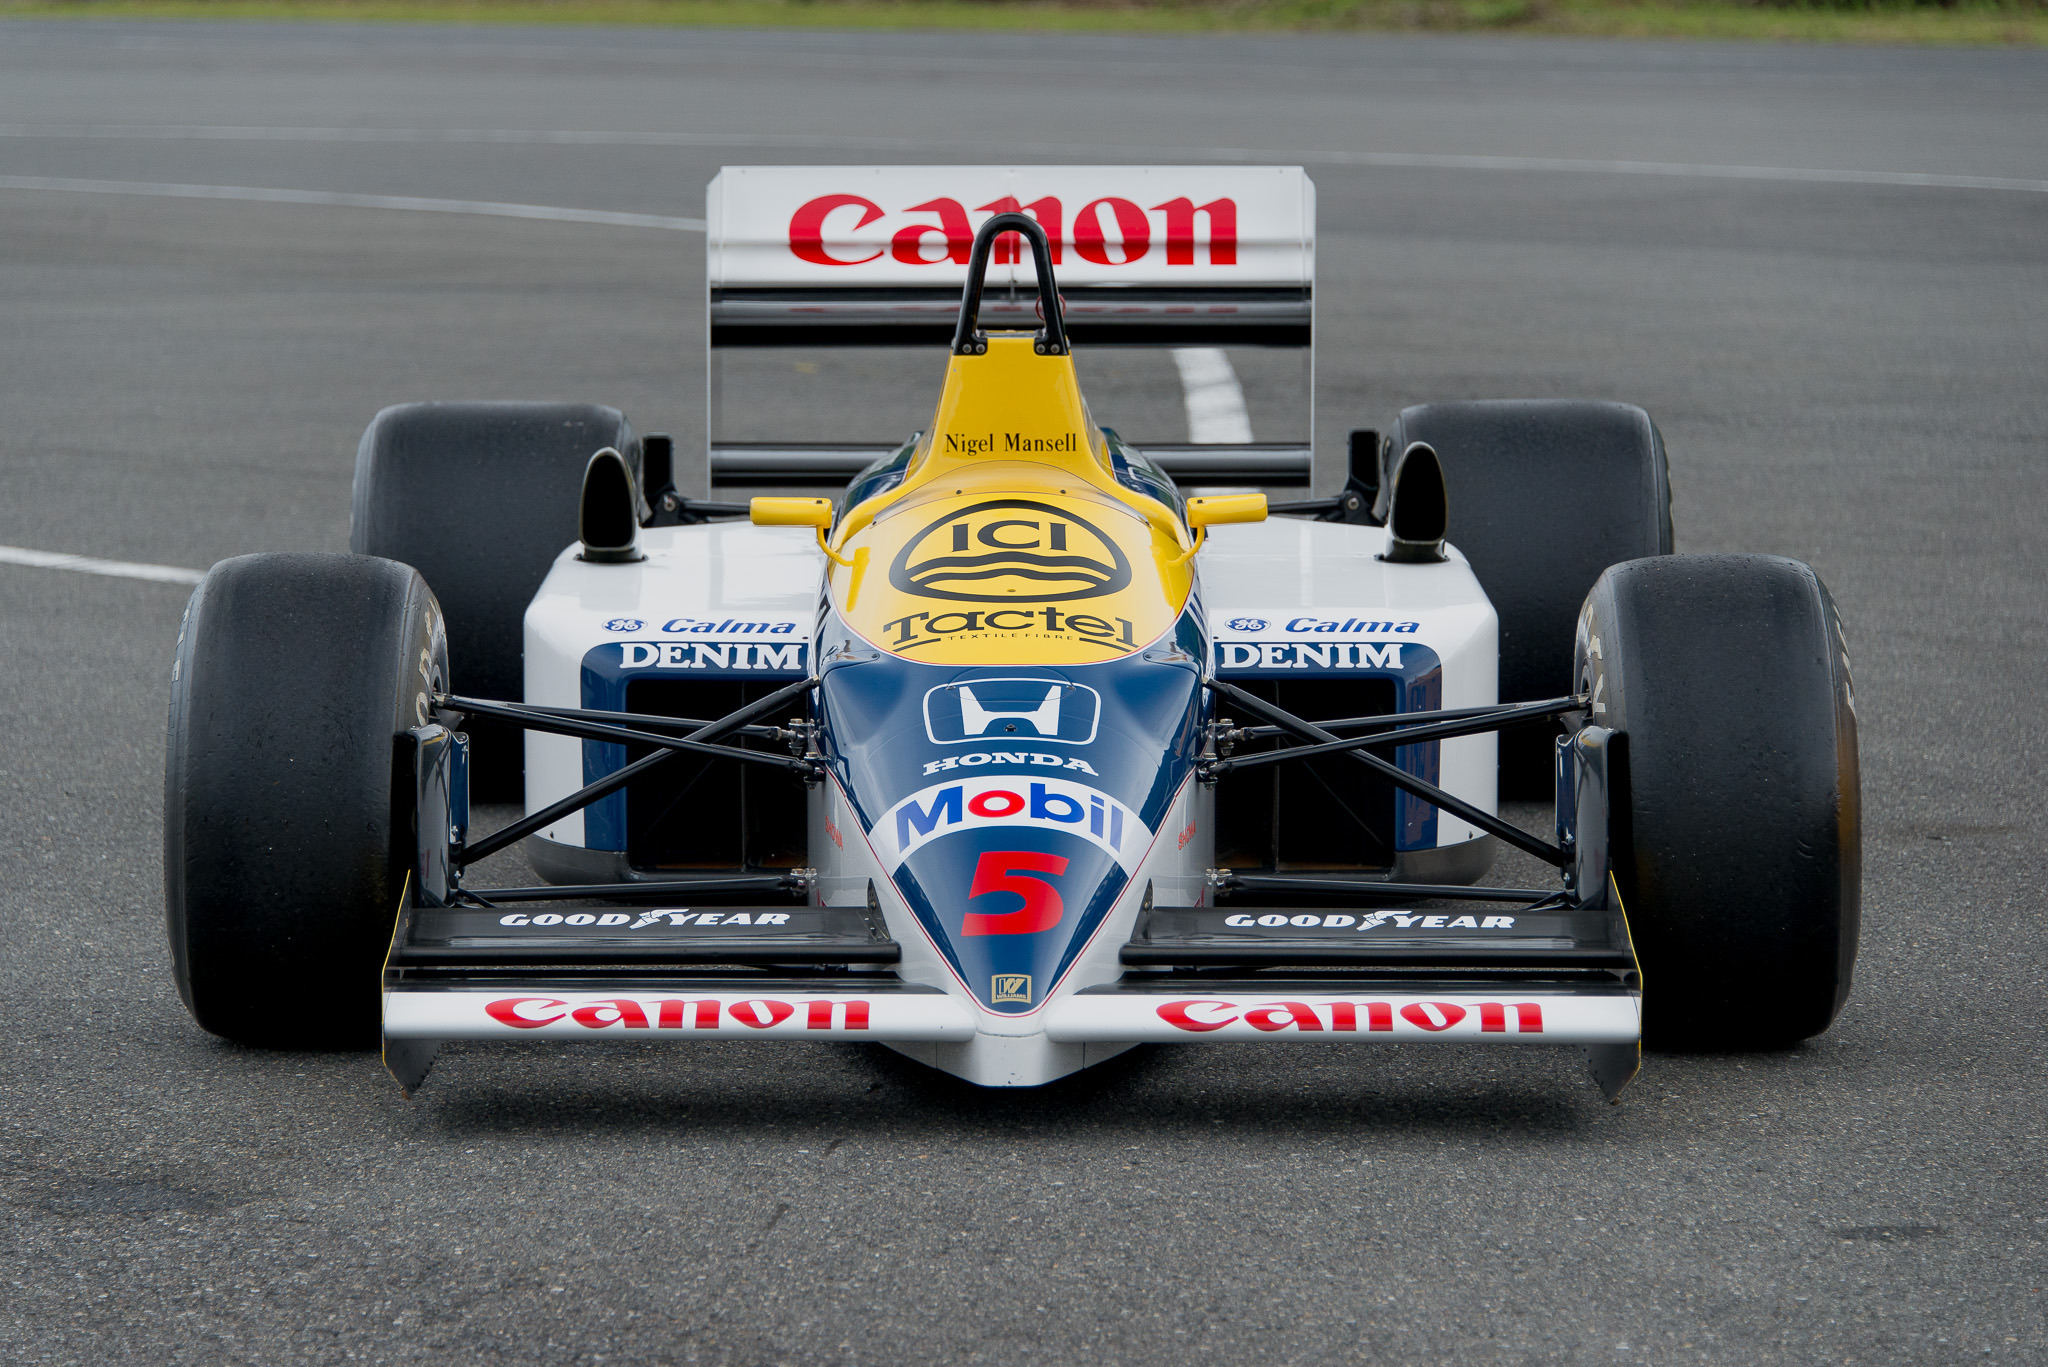 ホンダ F1世界選手権 1986年コンストラクターズチャンピオン 獲得記念 